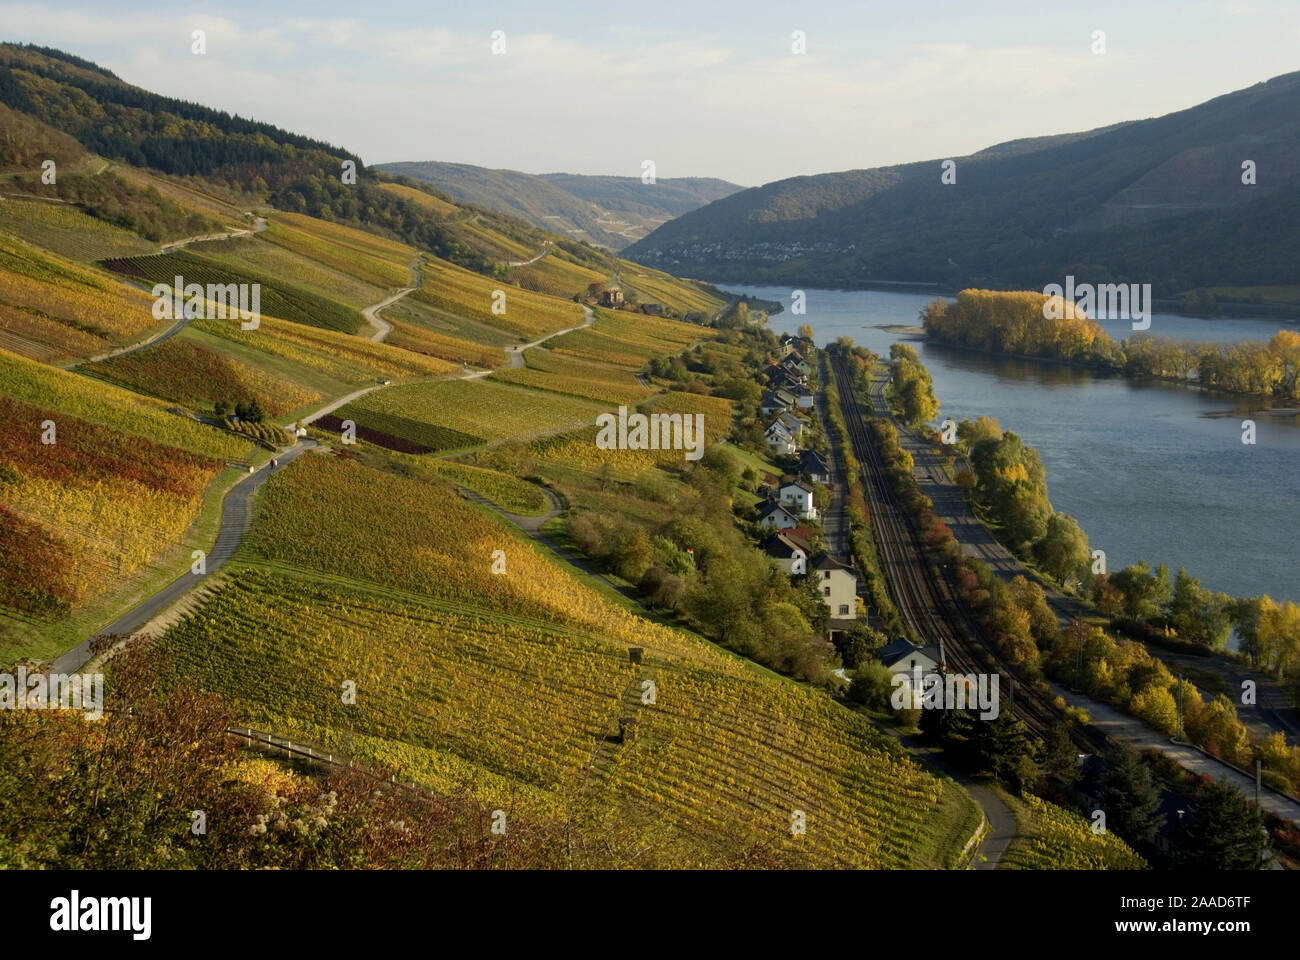 Reise; Rhein; Fluss; Weinberg; Unesco; Rheintal; Herbstlandschaft; Herbst; Lorch; Mittelrhein; Renania-Palatinato; Deutschland; Europa; Weinberge; Ort; R Foto Stock